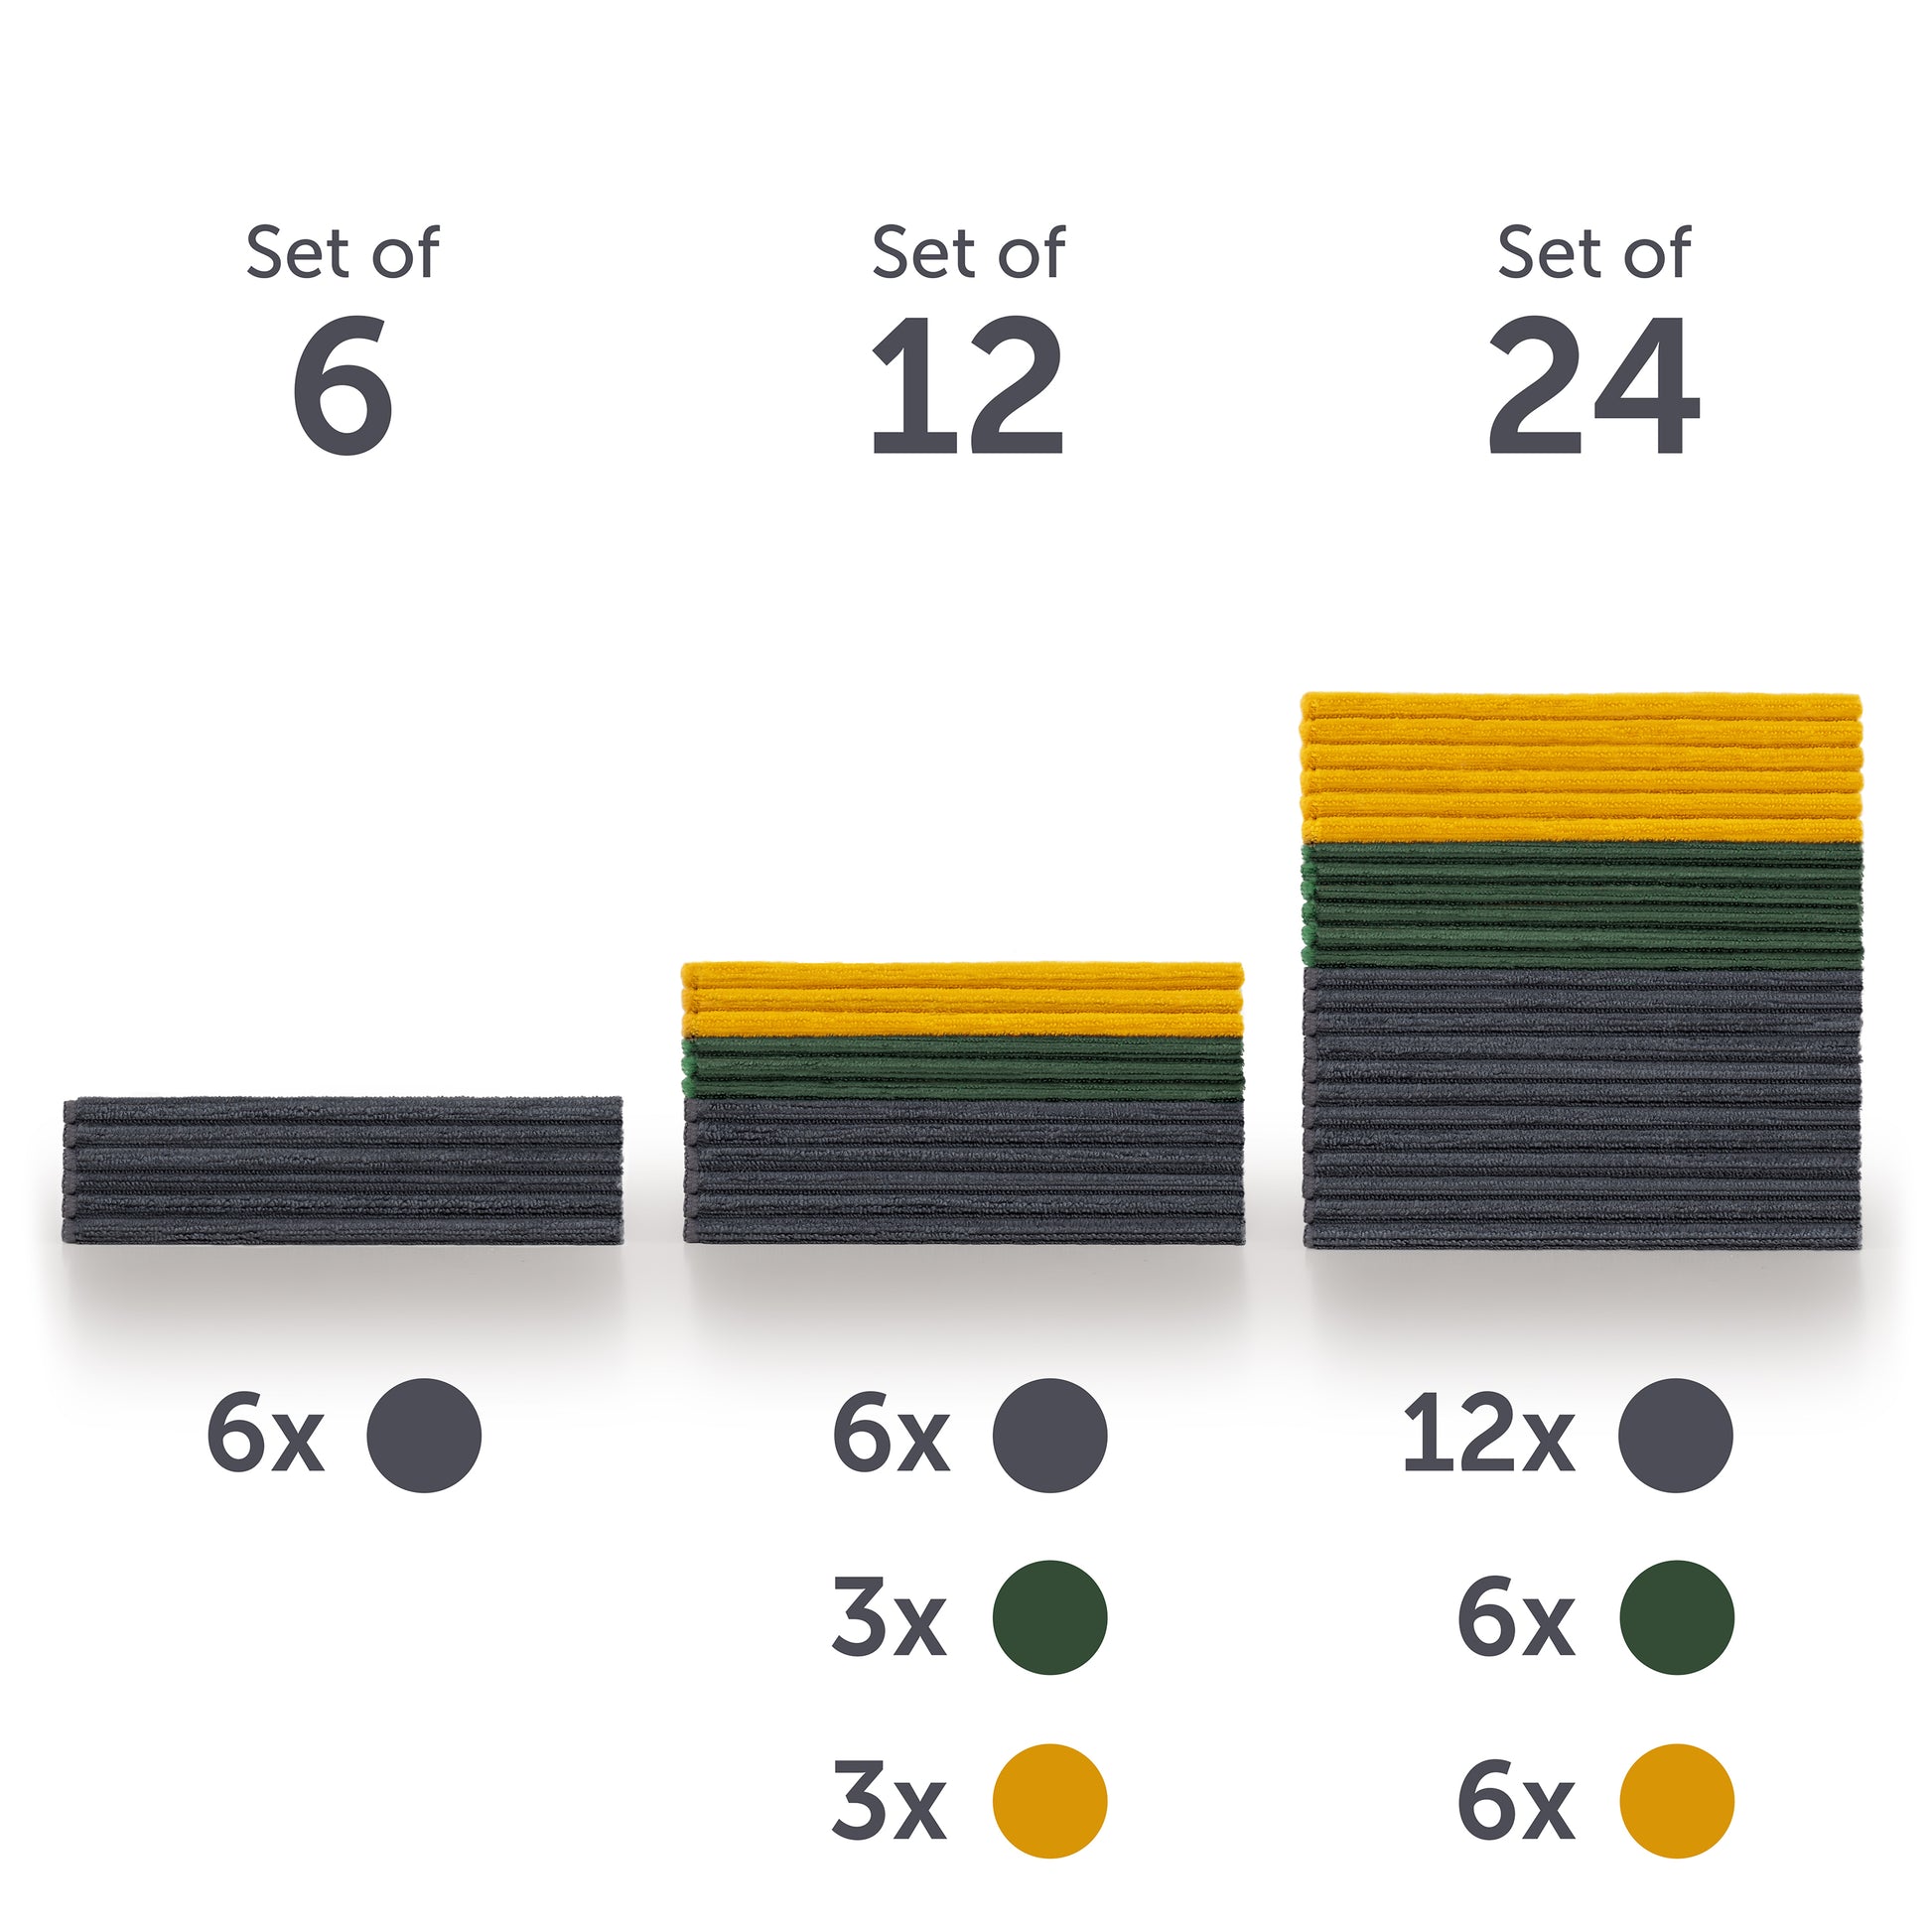 Grafikdarstellung verschiedener Sets von Mikrofasertüchern mit Anzahl und symbolischer Farbkennzeichnung.